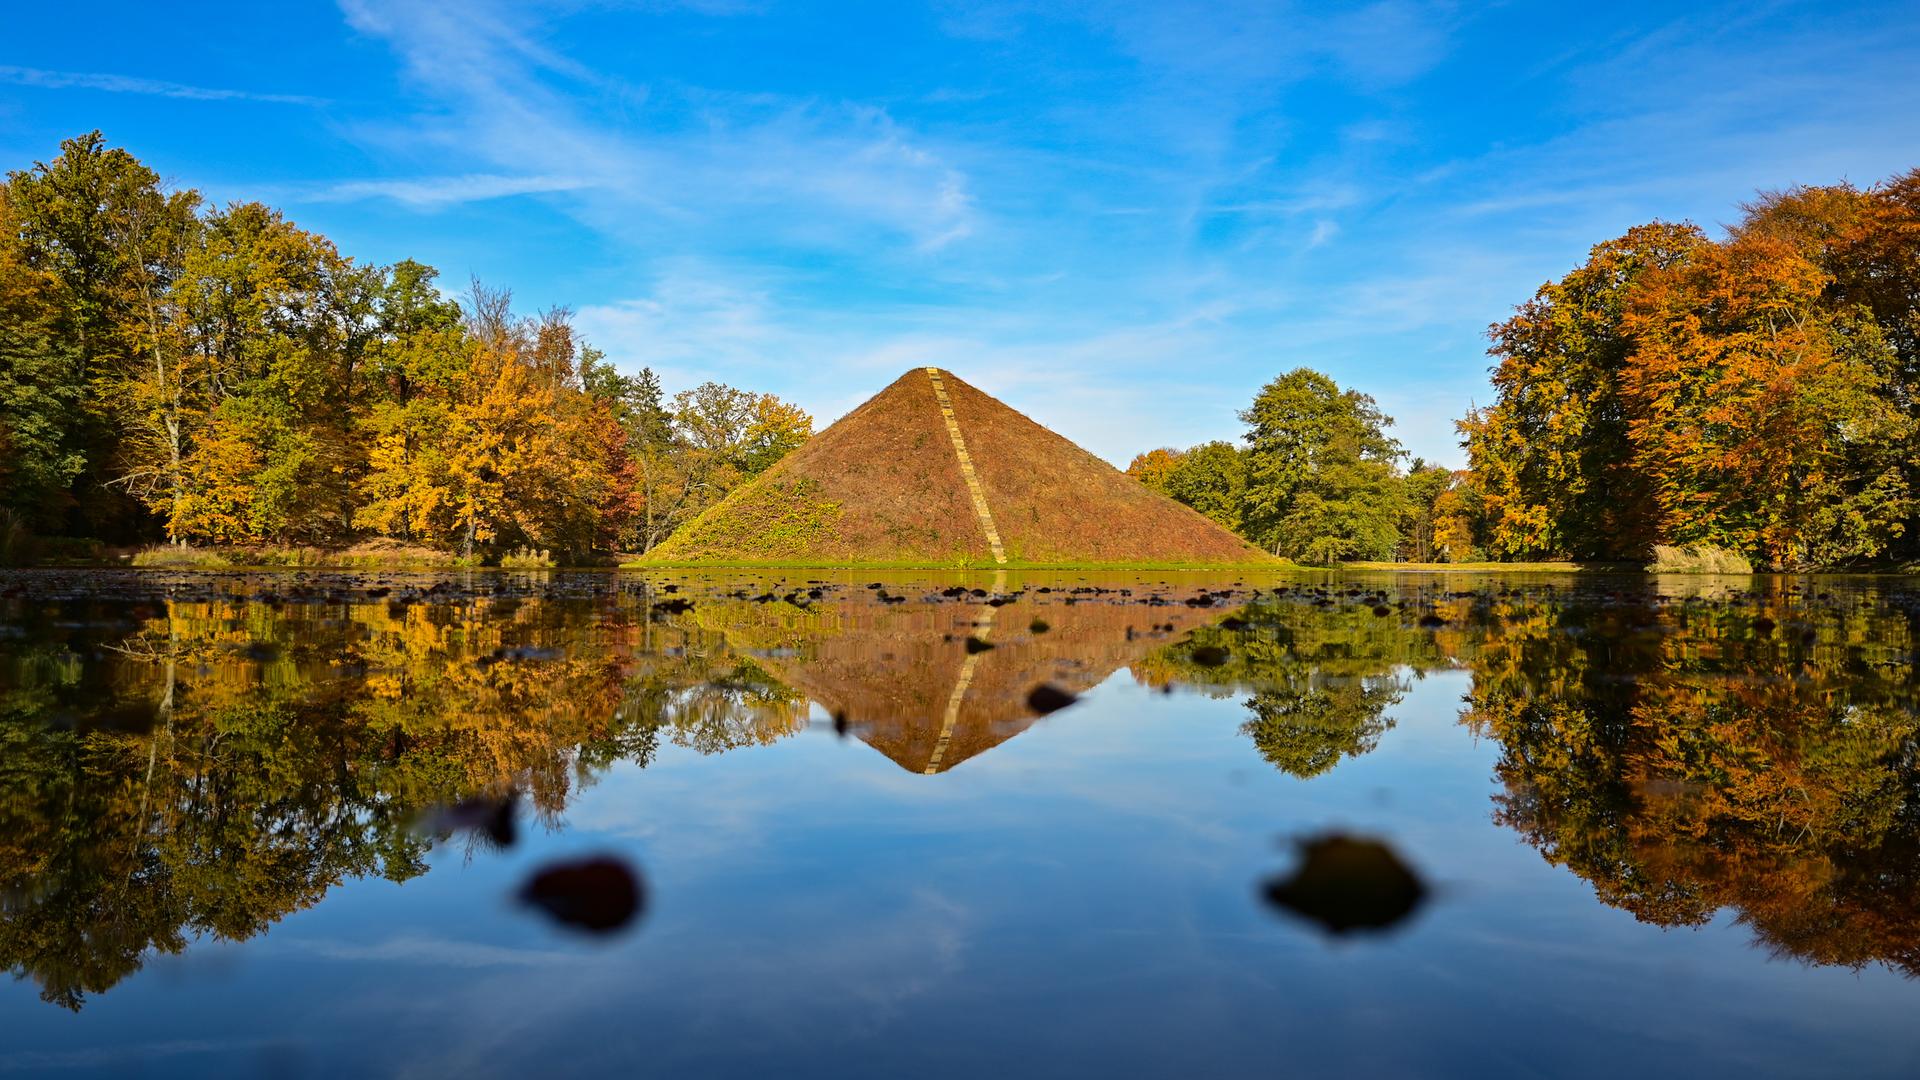 Eine bepflanzte Steinpyramide in einem See, der von herbstlich gefärbten Bäumen umstanden ist